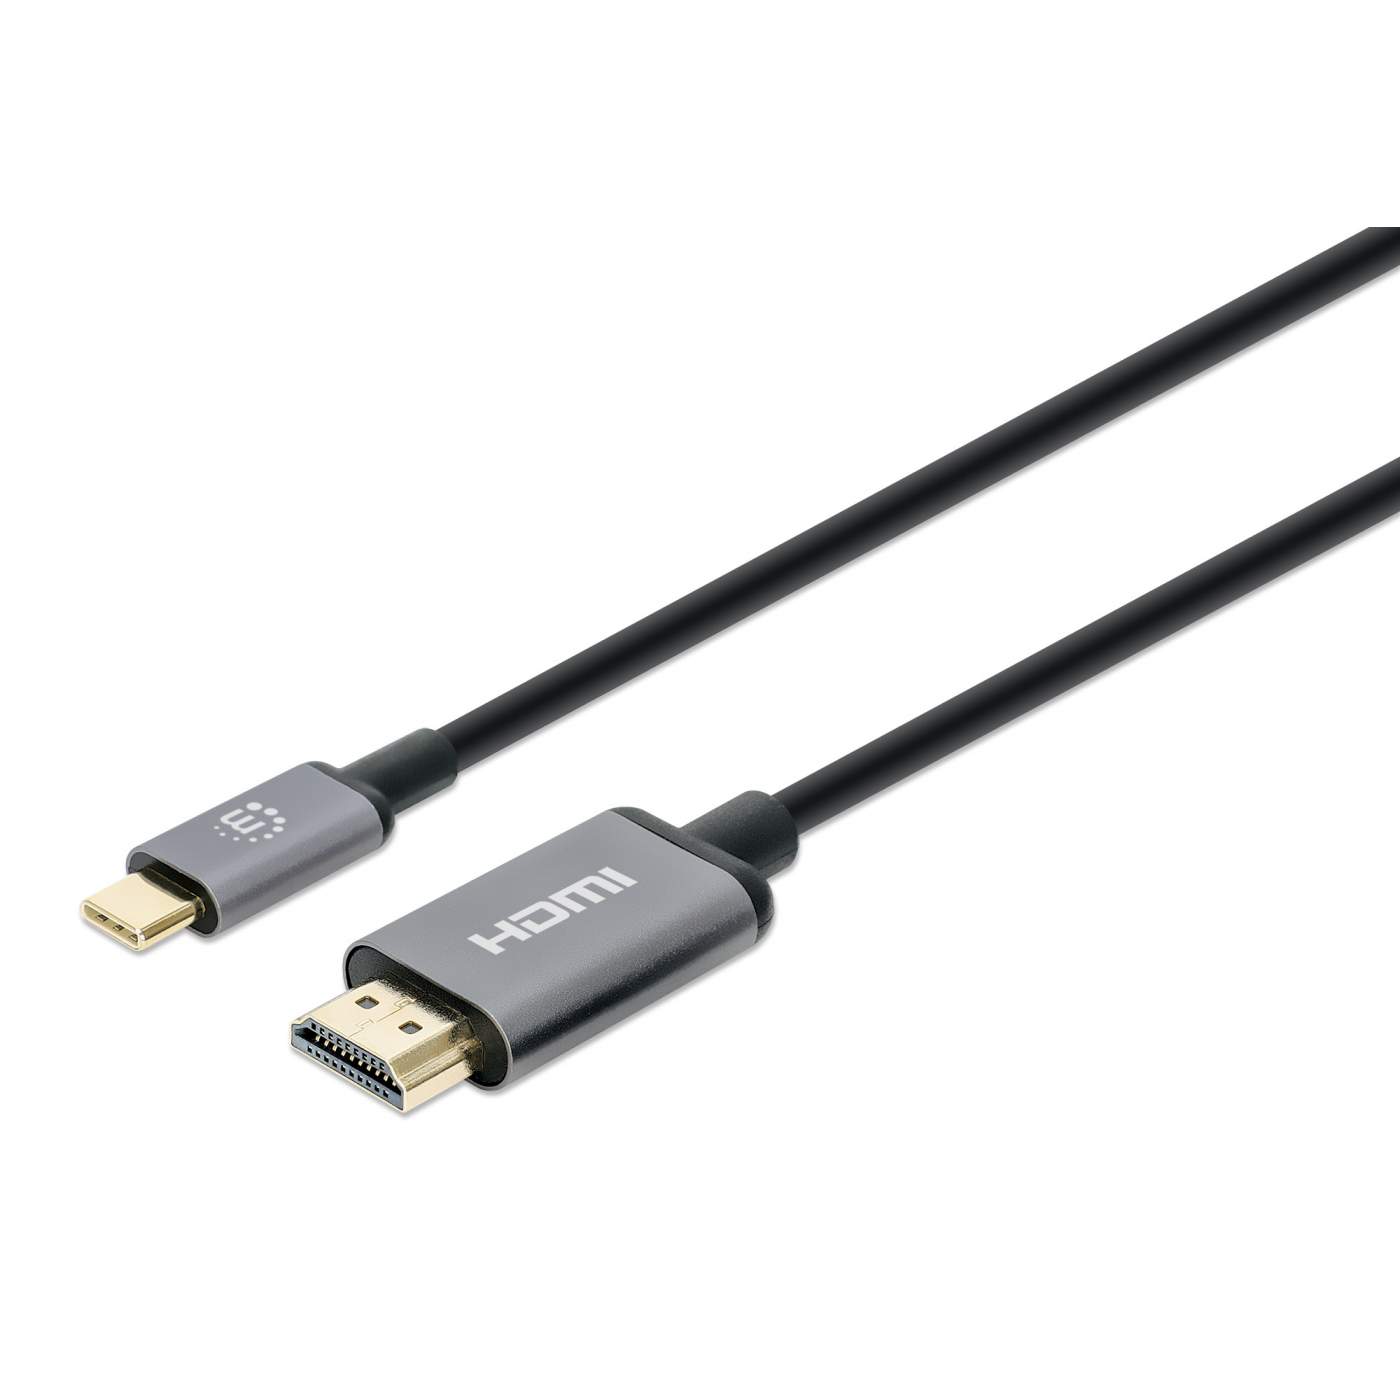 Cable USB C a HDMI 4K, adaptador de cable USB tipo C a HDMI de 10 pies,  cable trenzado de alta velocidad, conecta portátil y teléfono a TV,  compatible